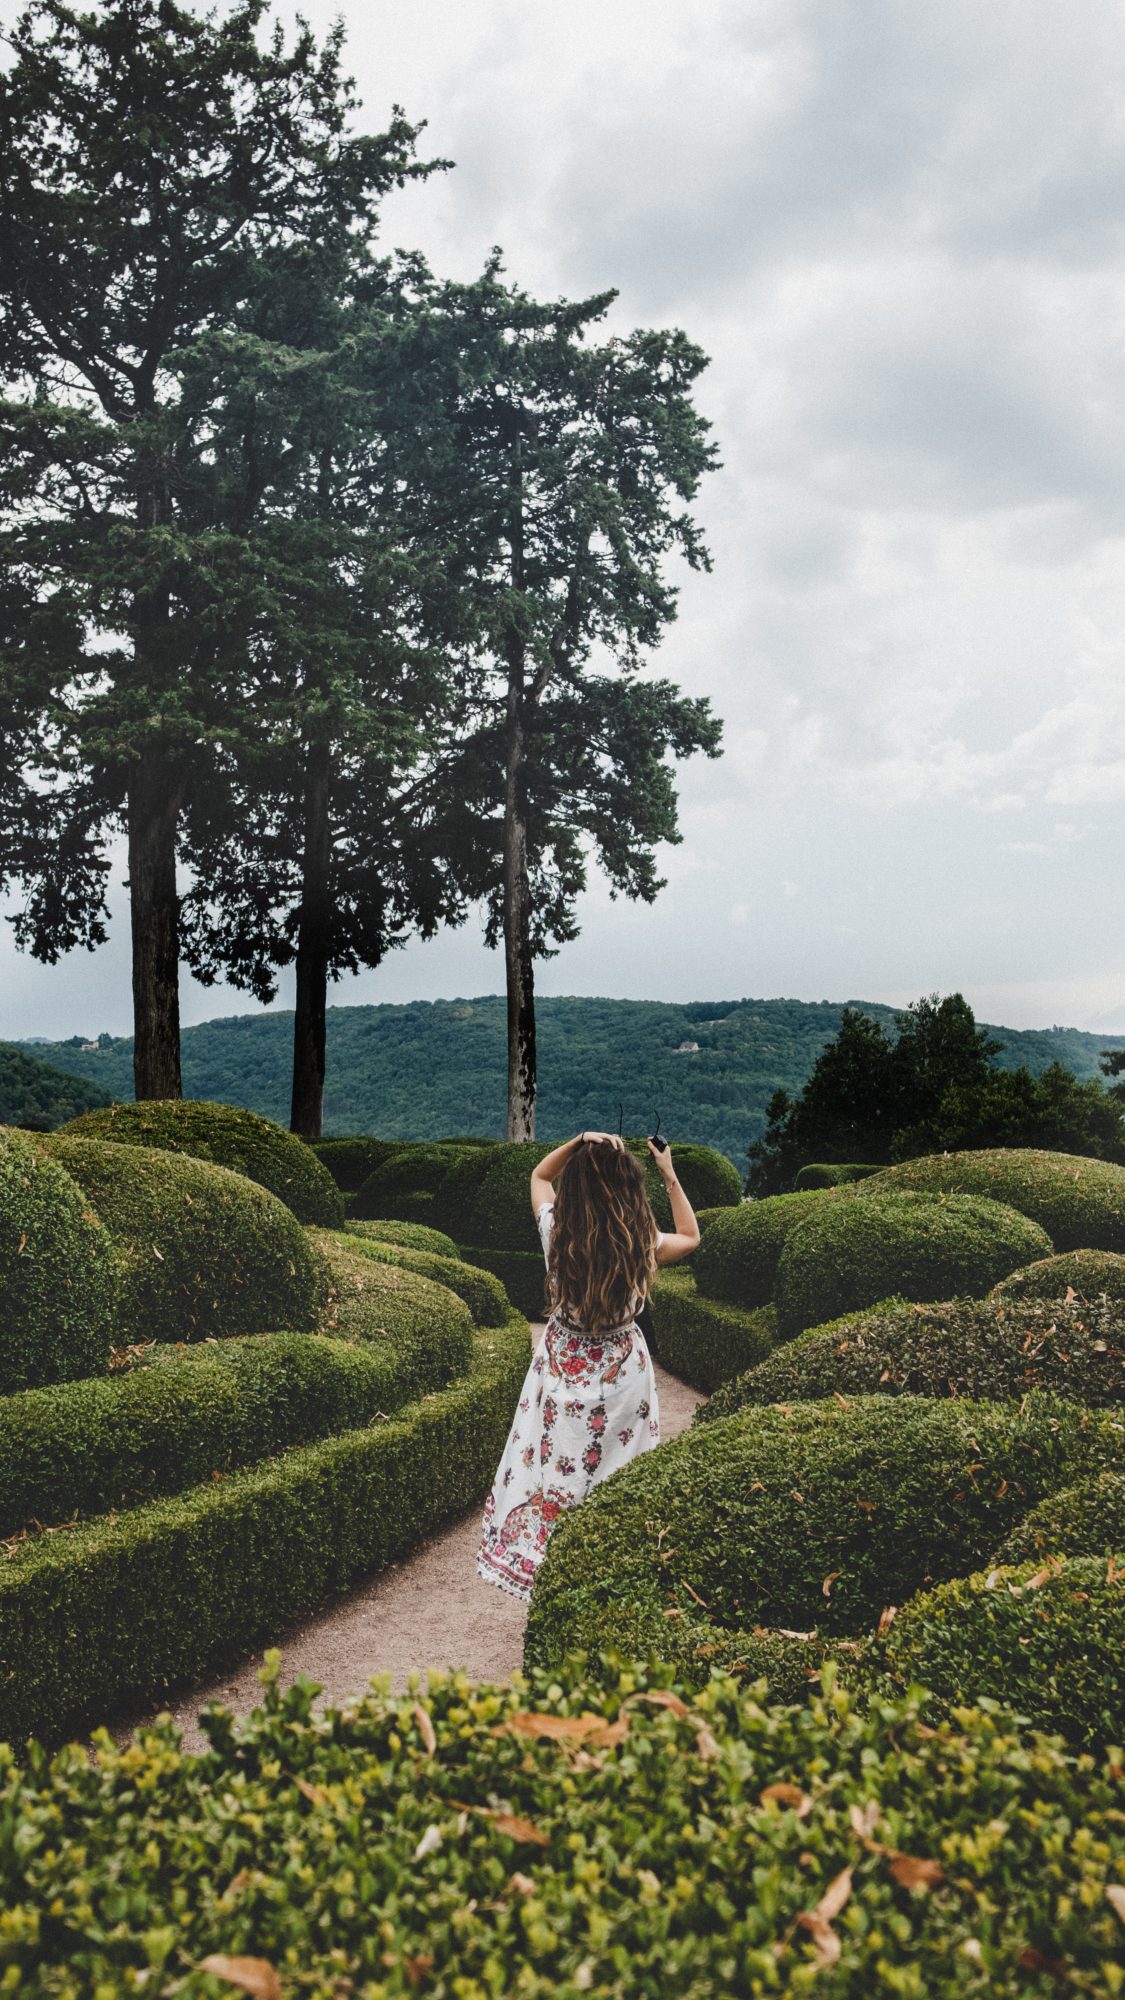 les jardins de marqueyssac : obligé d'y aller pour visiter la Dordogne en 2 jours